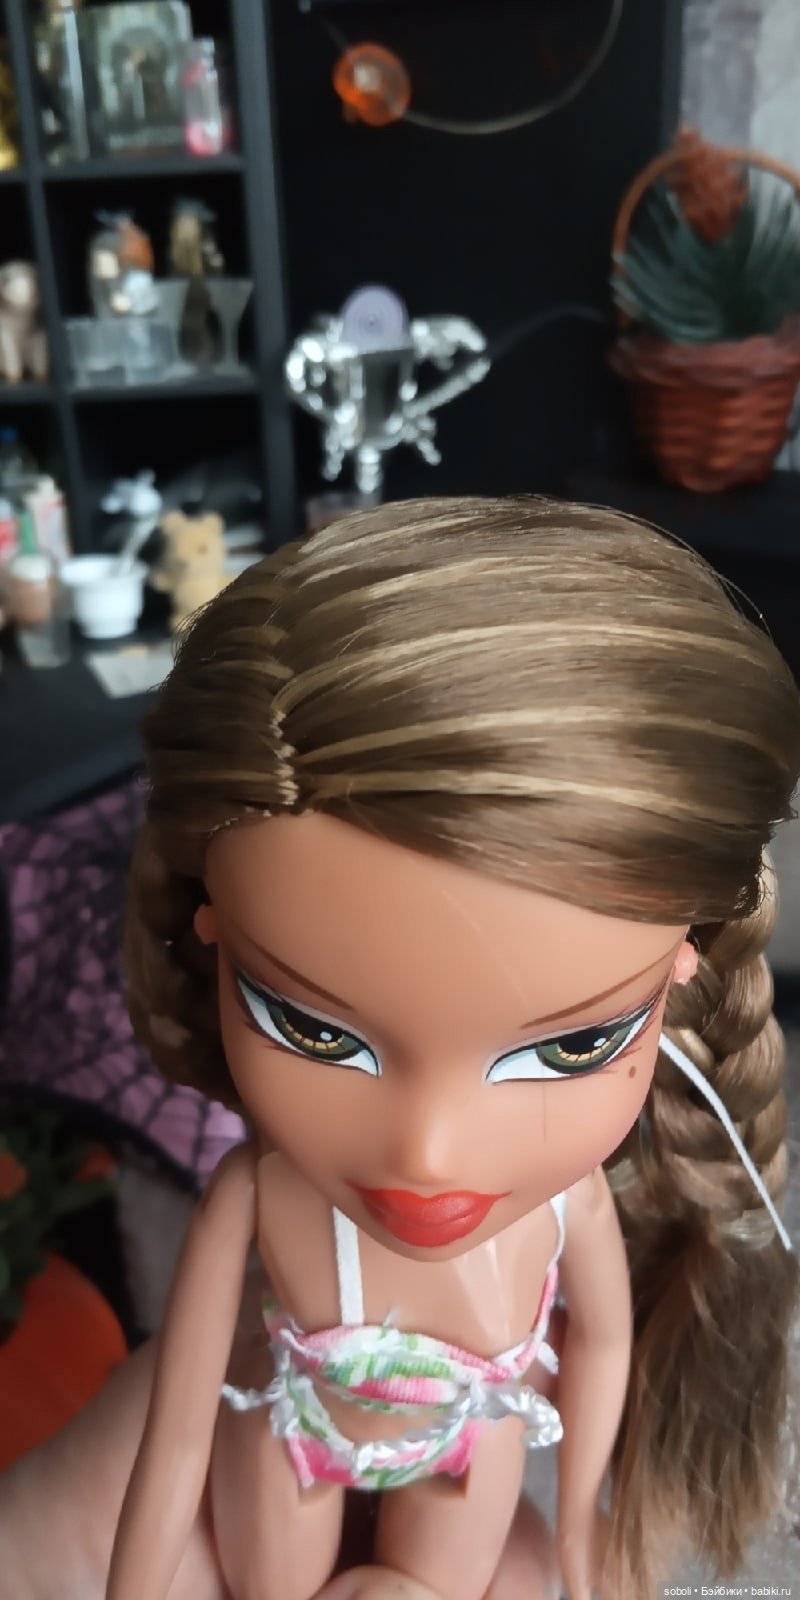 Кукла Братц Bratz Jade Hot Summer Dayz купить в Москве, Личные вещи